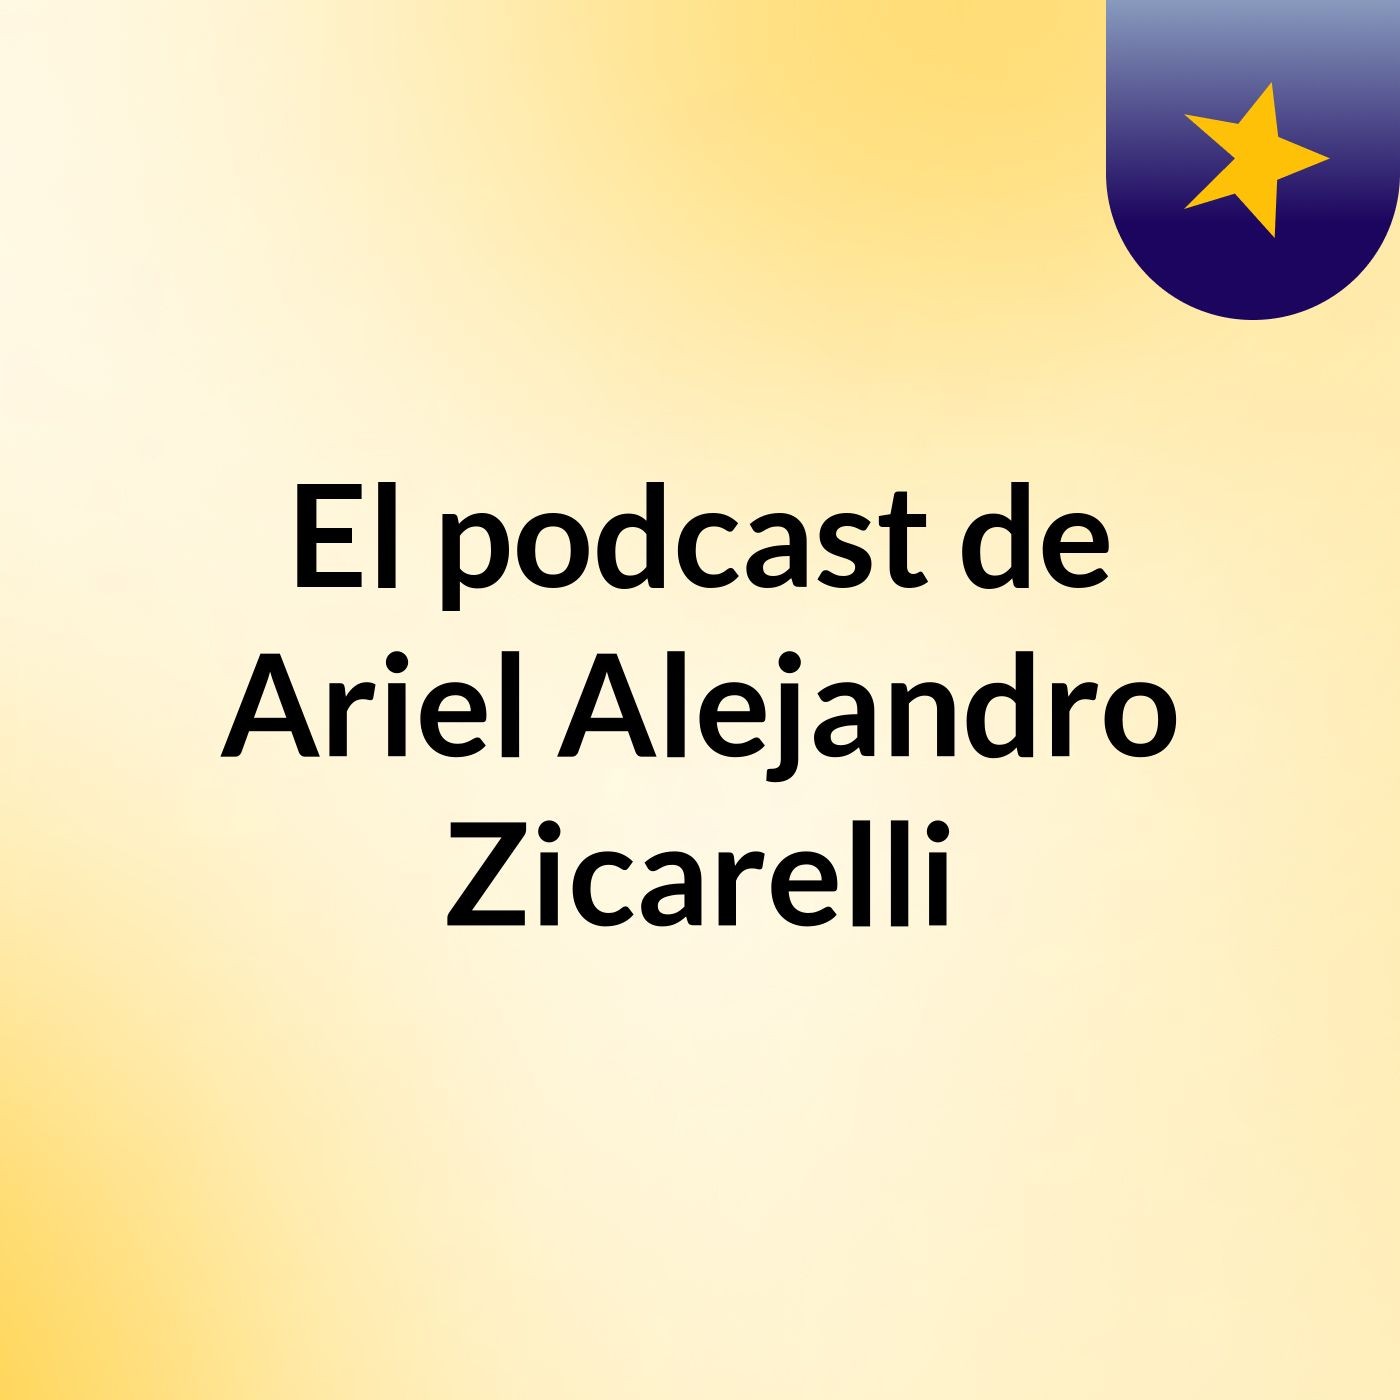 El podcast de Ariel Alejandro Zicarelli